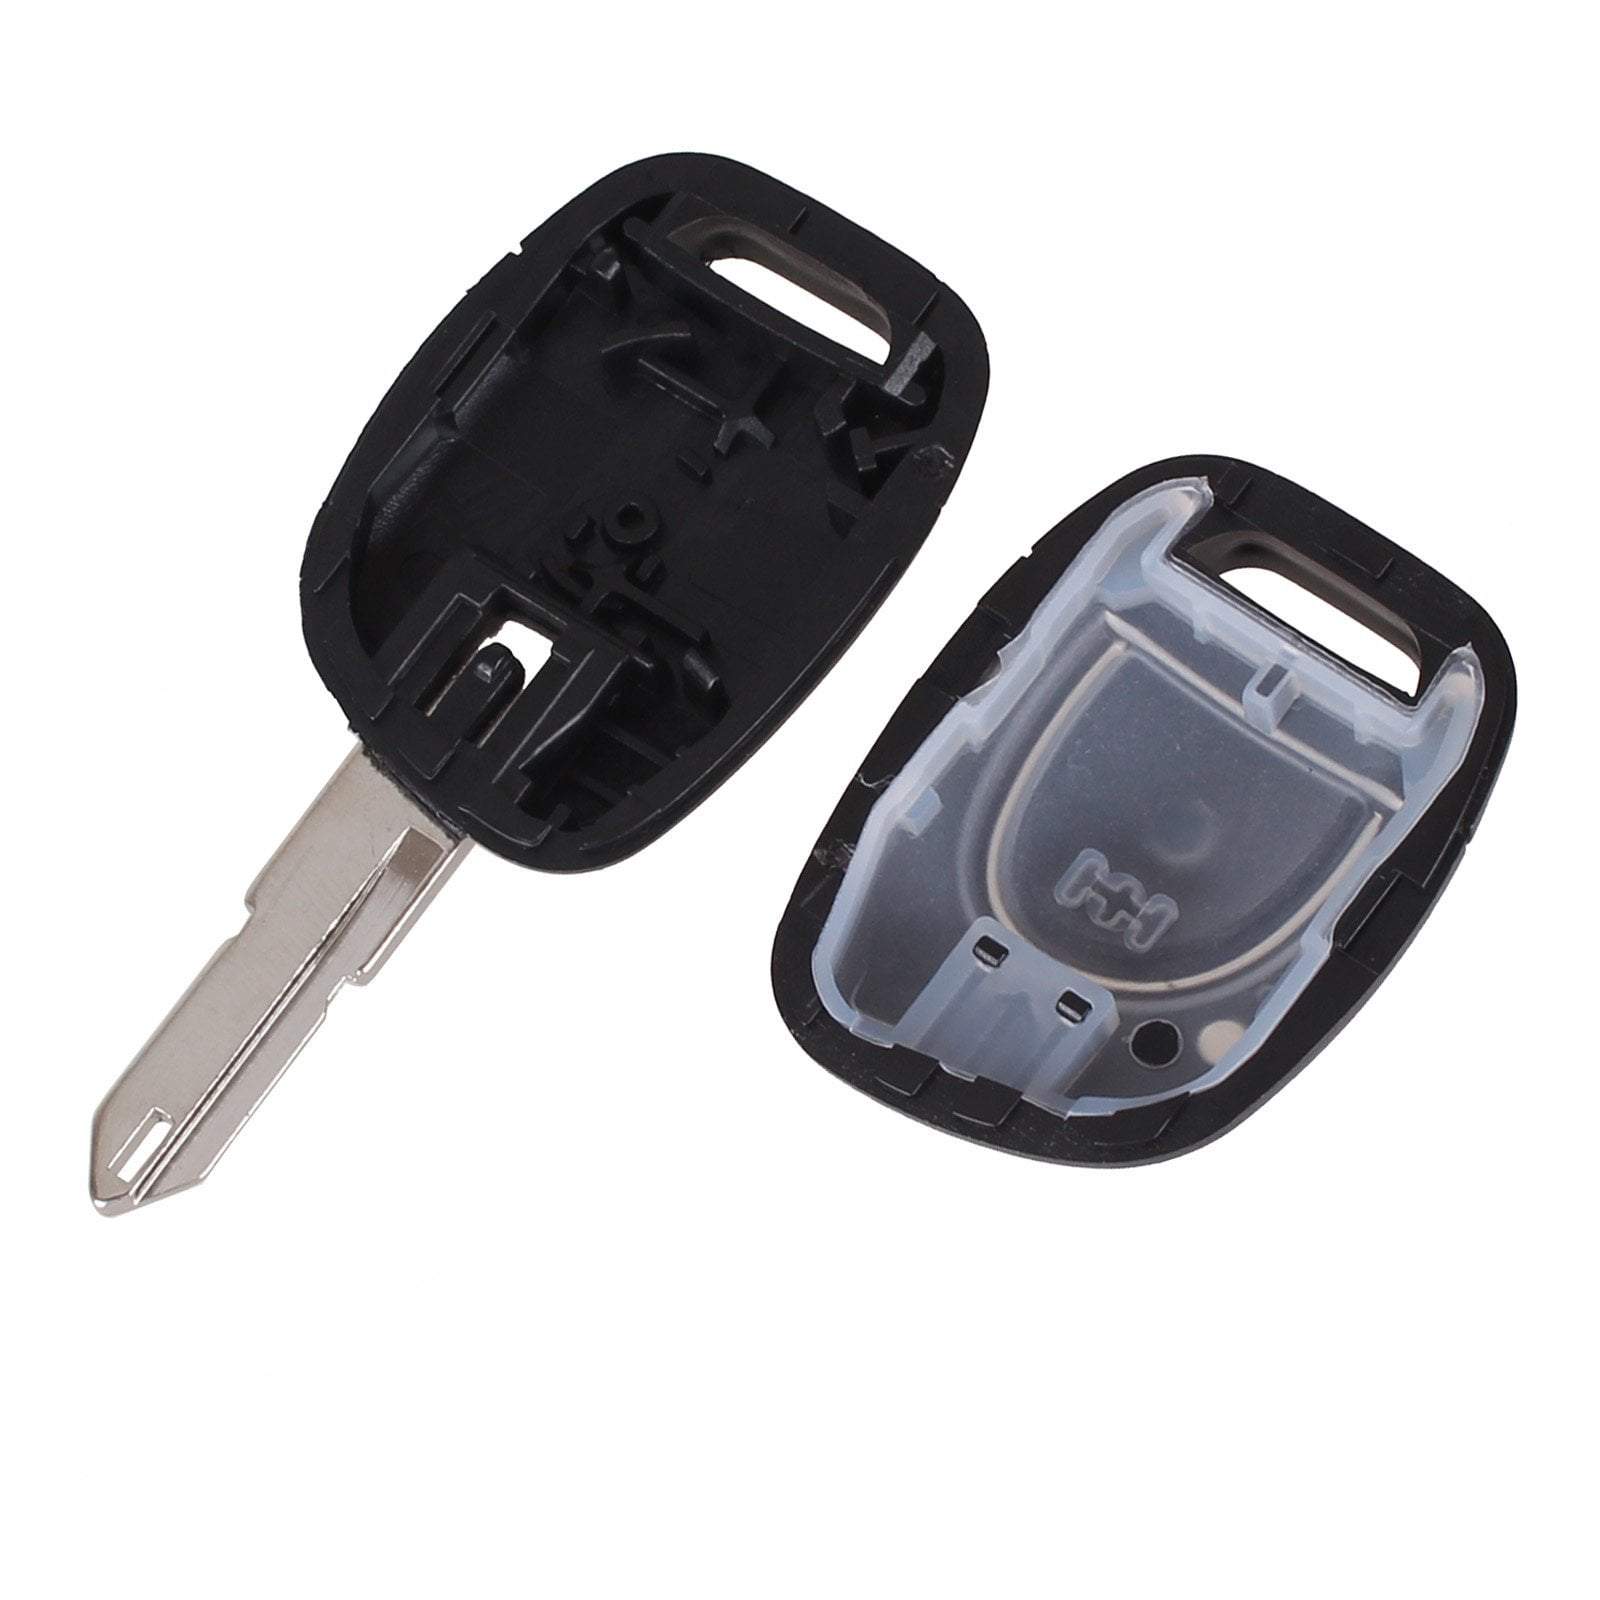 Fekete színű, 1 gombos Renault kulcsház szétszedve, VA3 kulcsszárral.